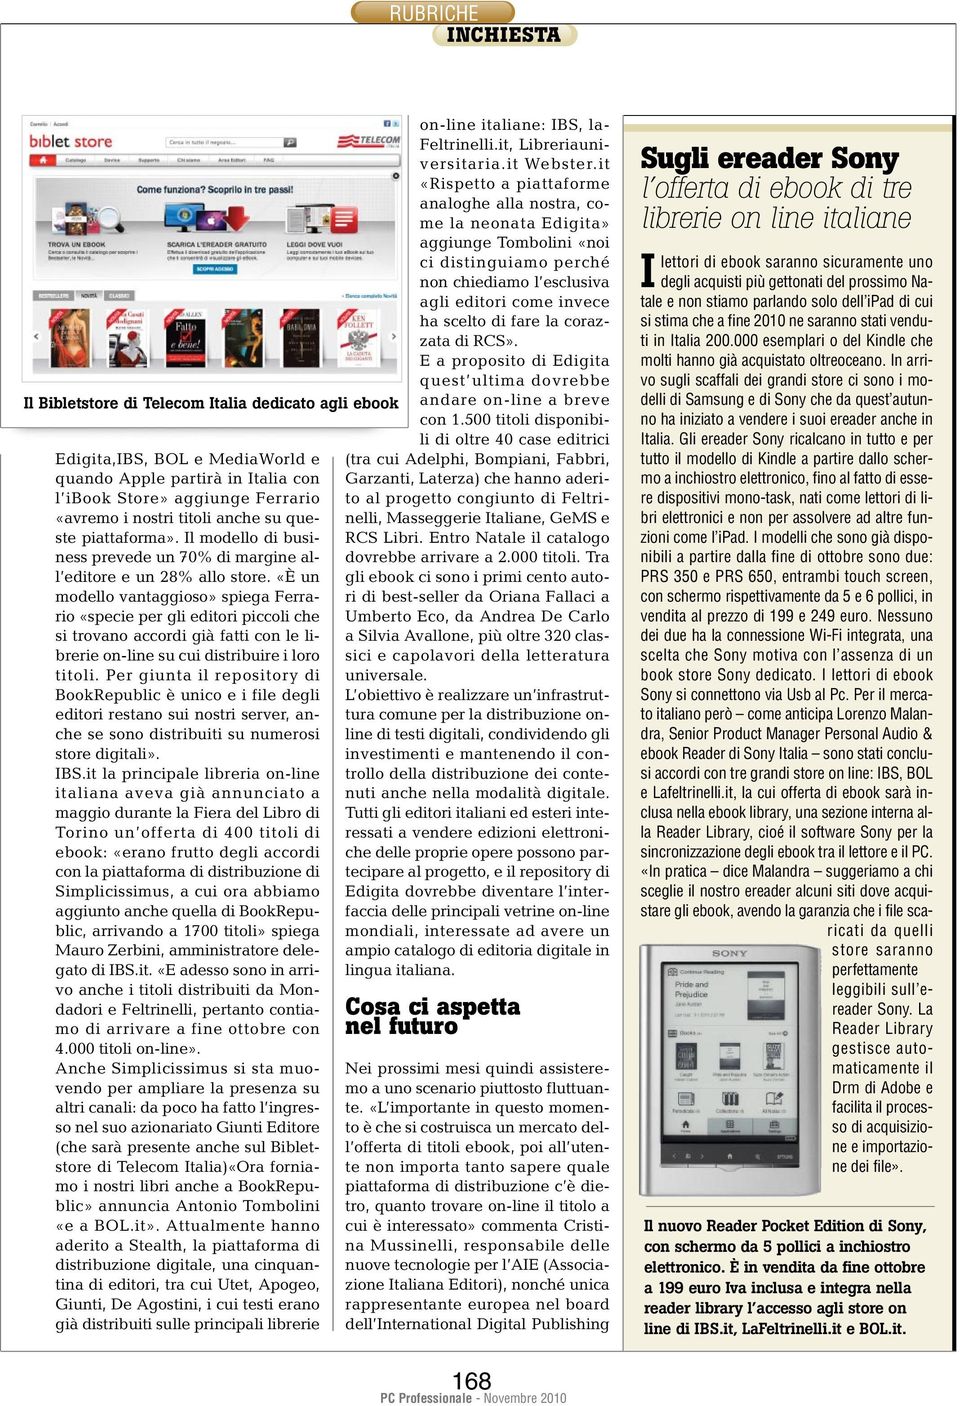 «È un modello vantaggioso» spiega Ferrario «specie per gli editori piccoli che si trovano accordi già fatti con le librerie on-line su cui distribuire i loro titoli.